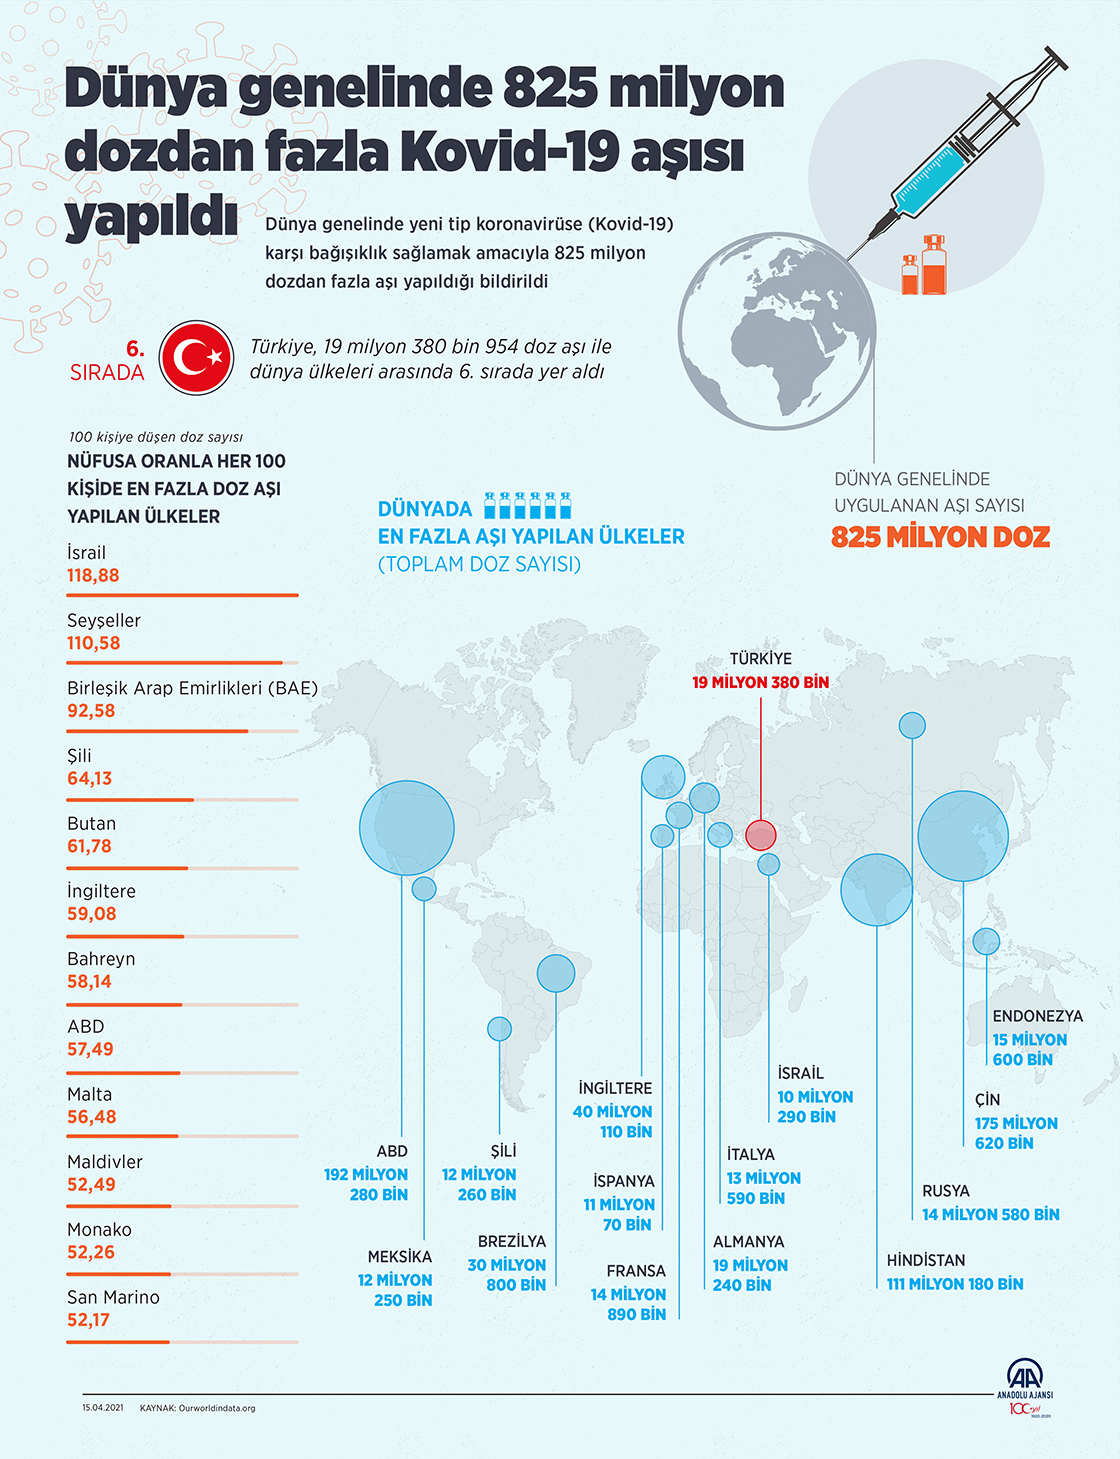  Dünya genelinde 825 milyon dozdan fazla Kovid-19 aşısı yapıldı